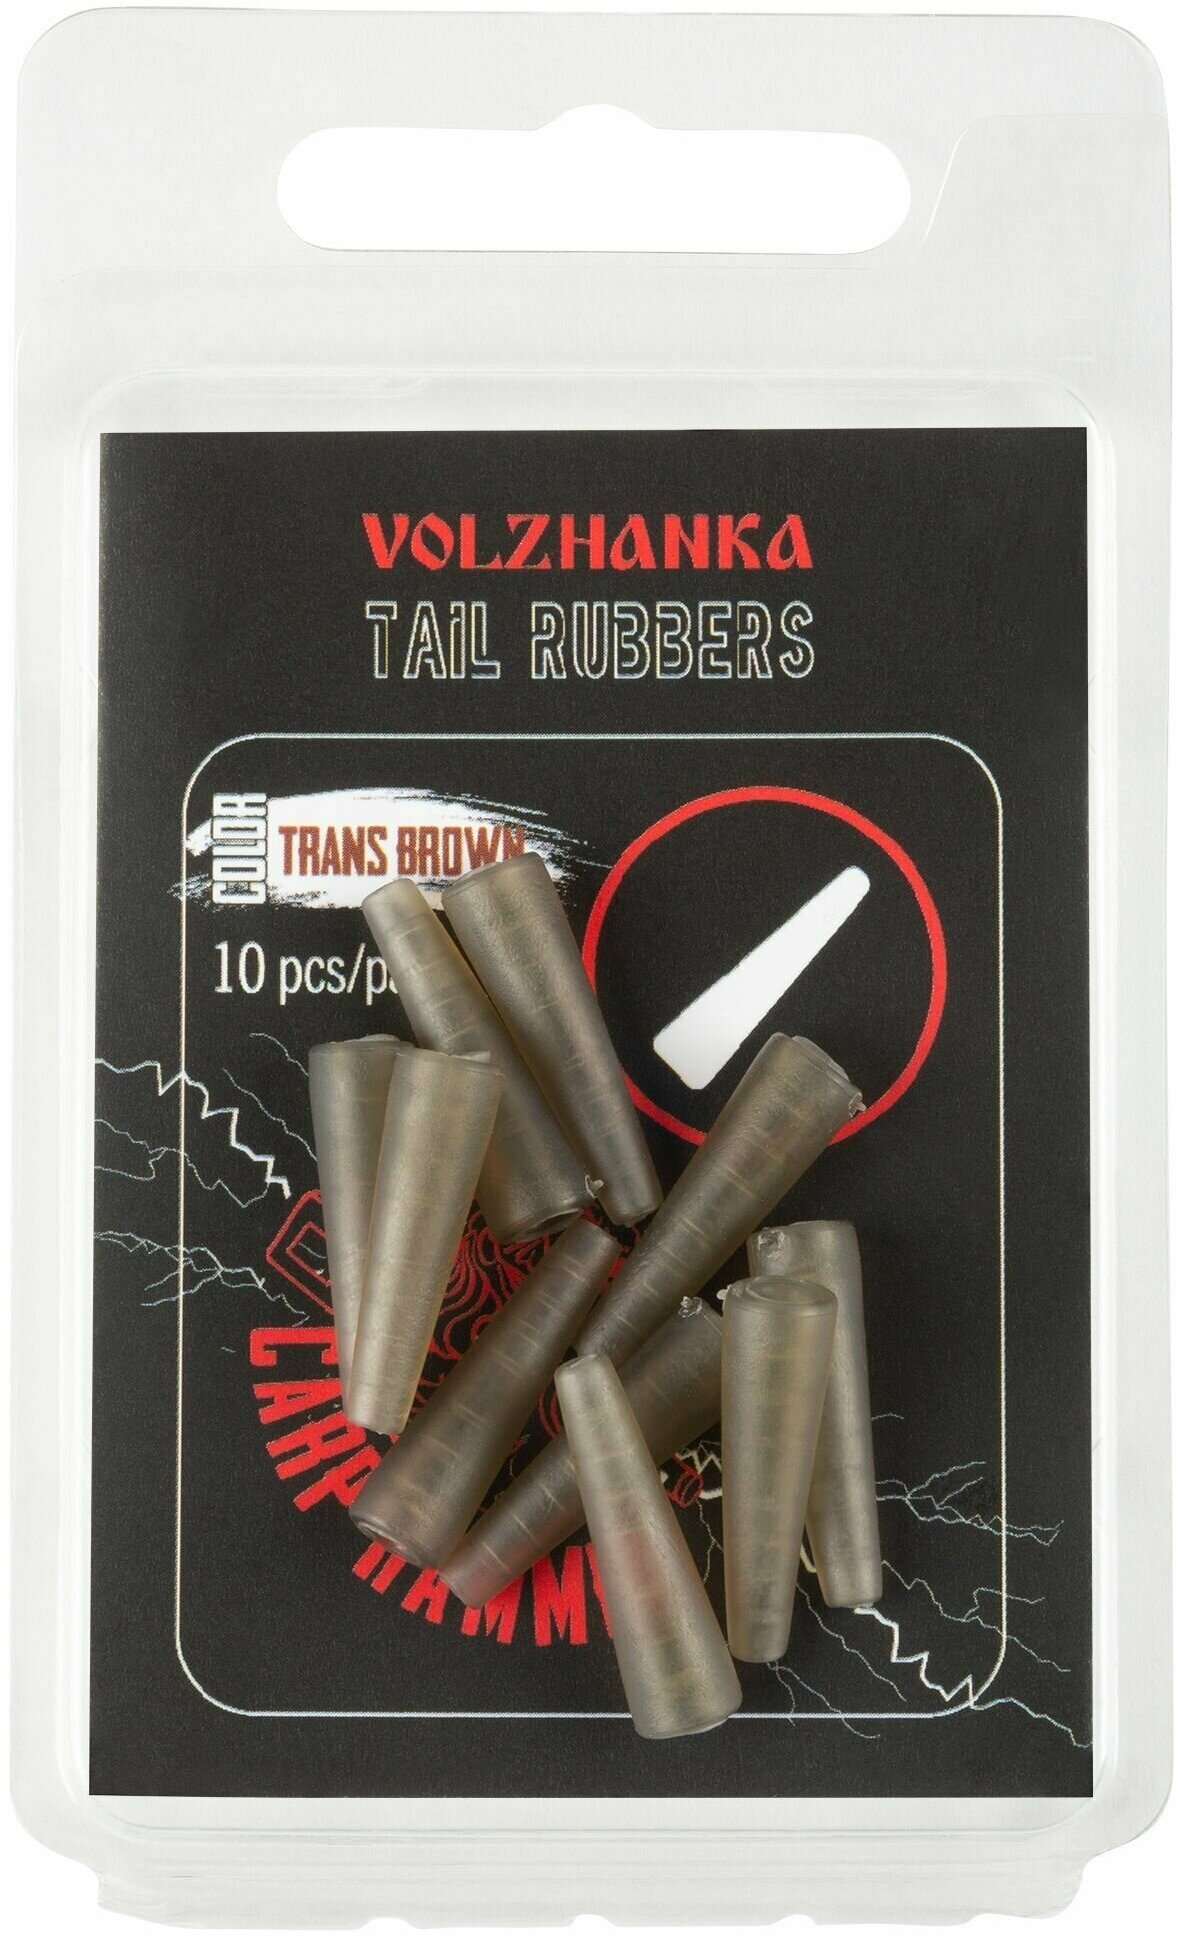 Волжанка Конус "Volzhanka Tail Rubbers" цвет Trans Brown (10шт/уп), Волжанка аксессуар для карповой ловли Карп Хаммер